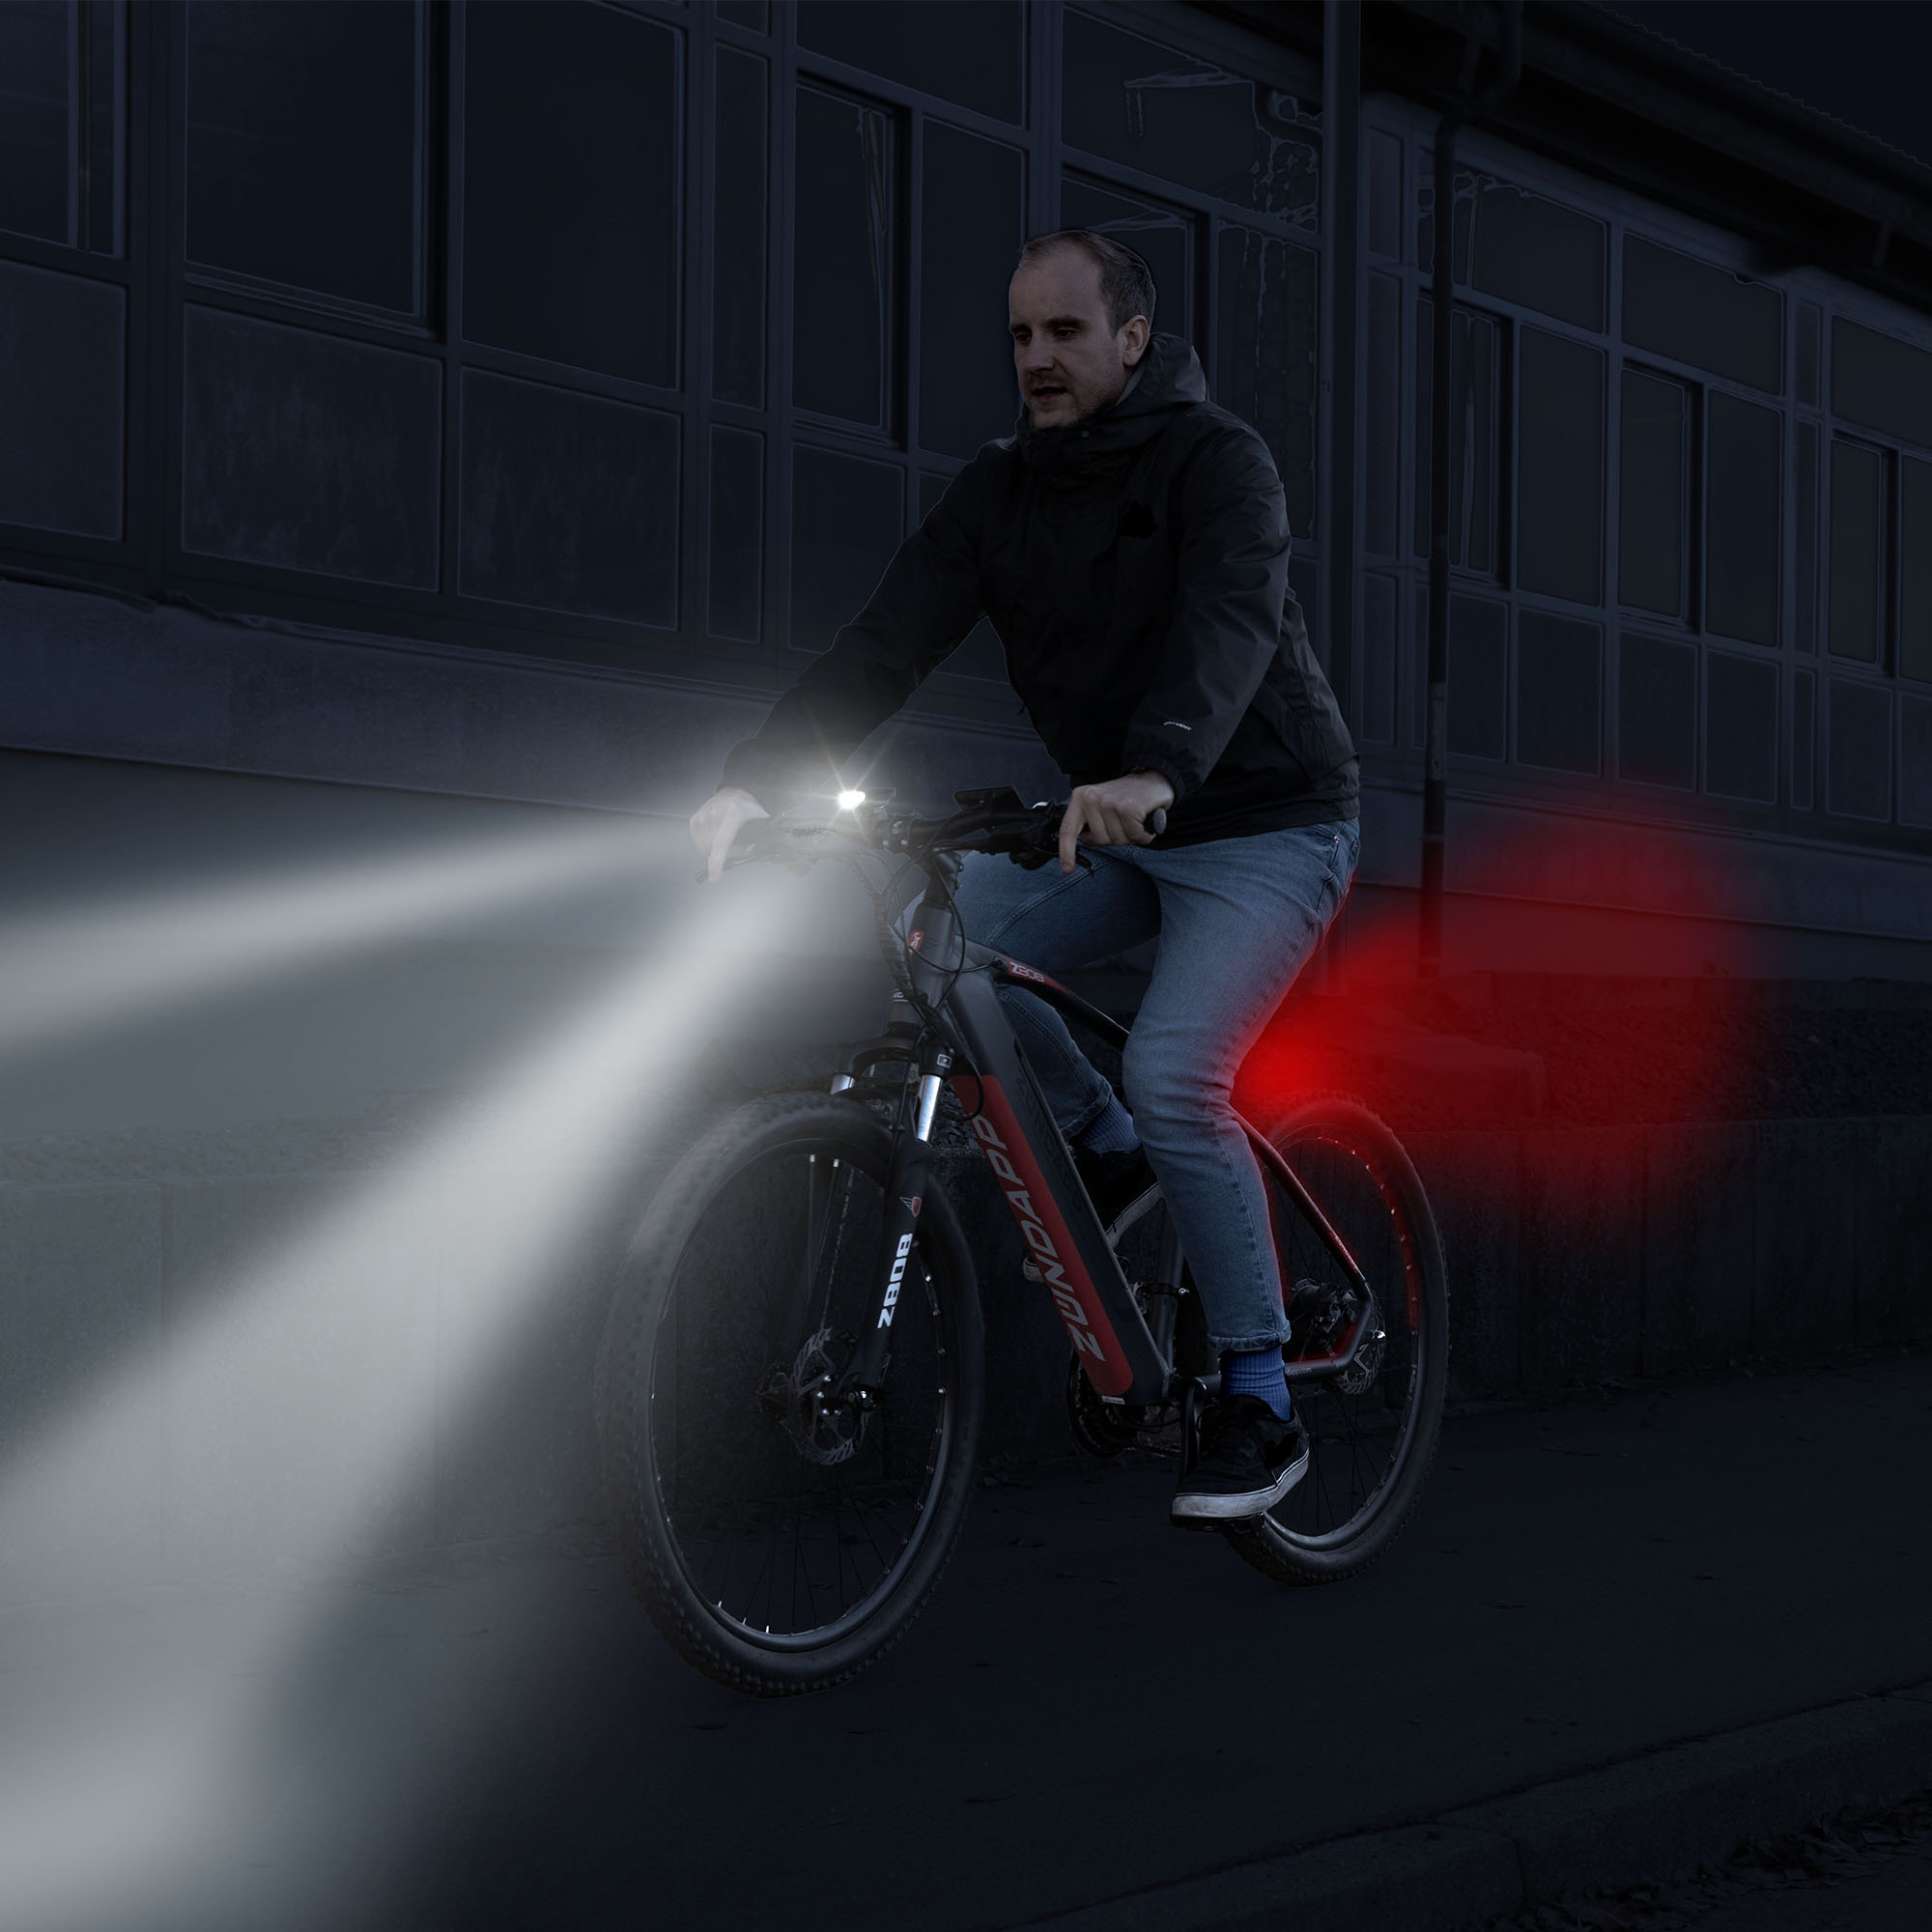 Fahrradlicht: LED-Licht oder nicht? Was muß ans Fahrrad, was darf